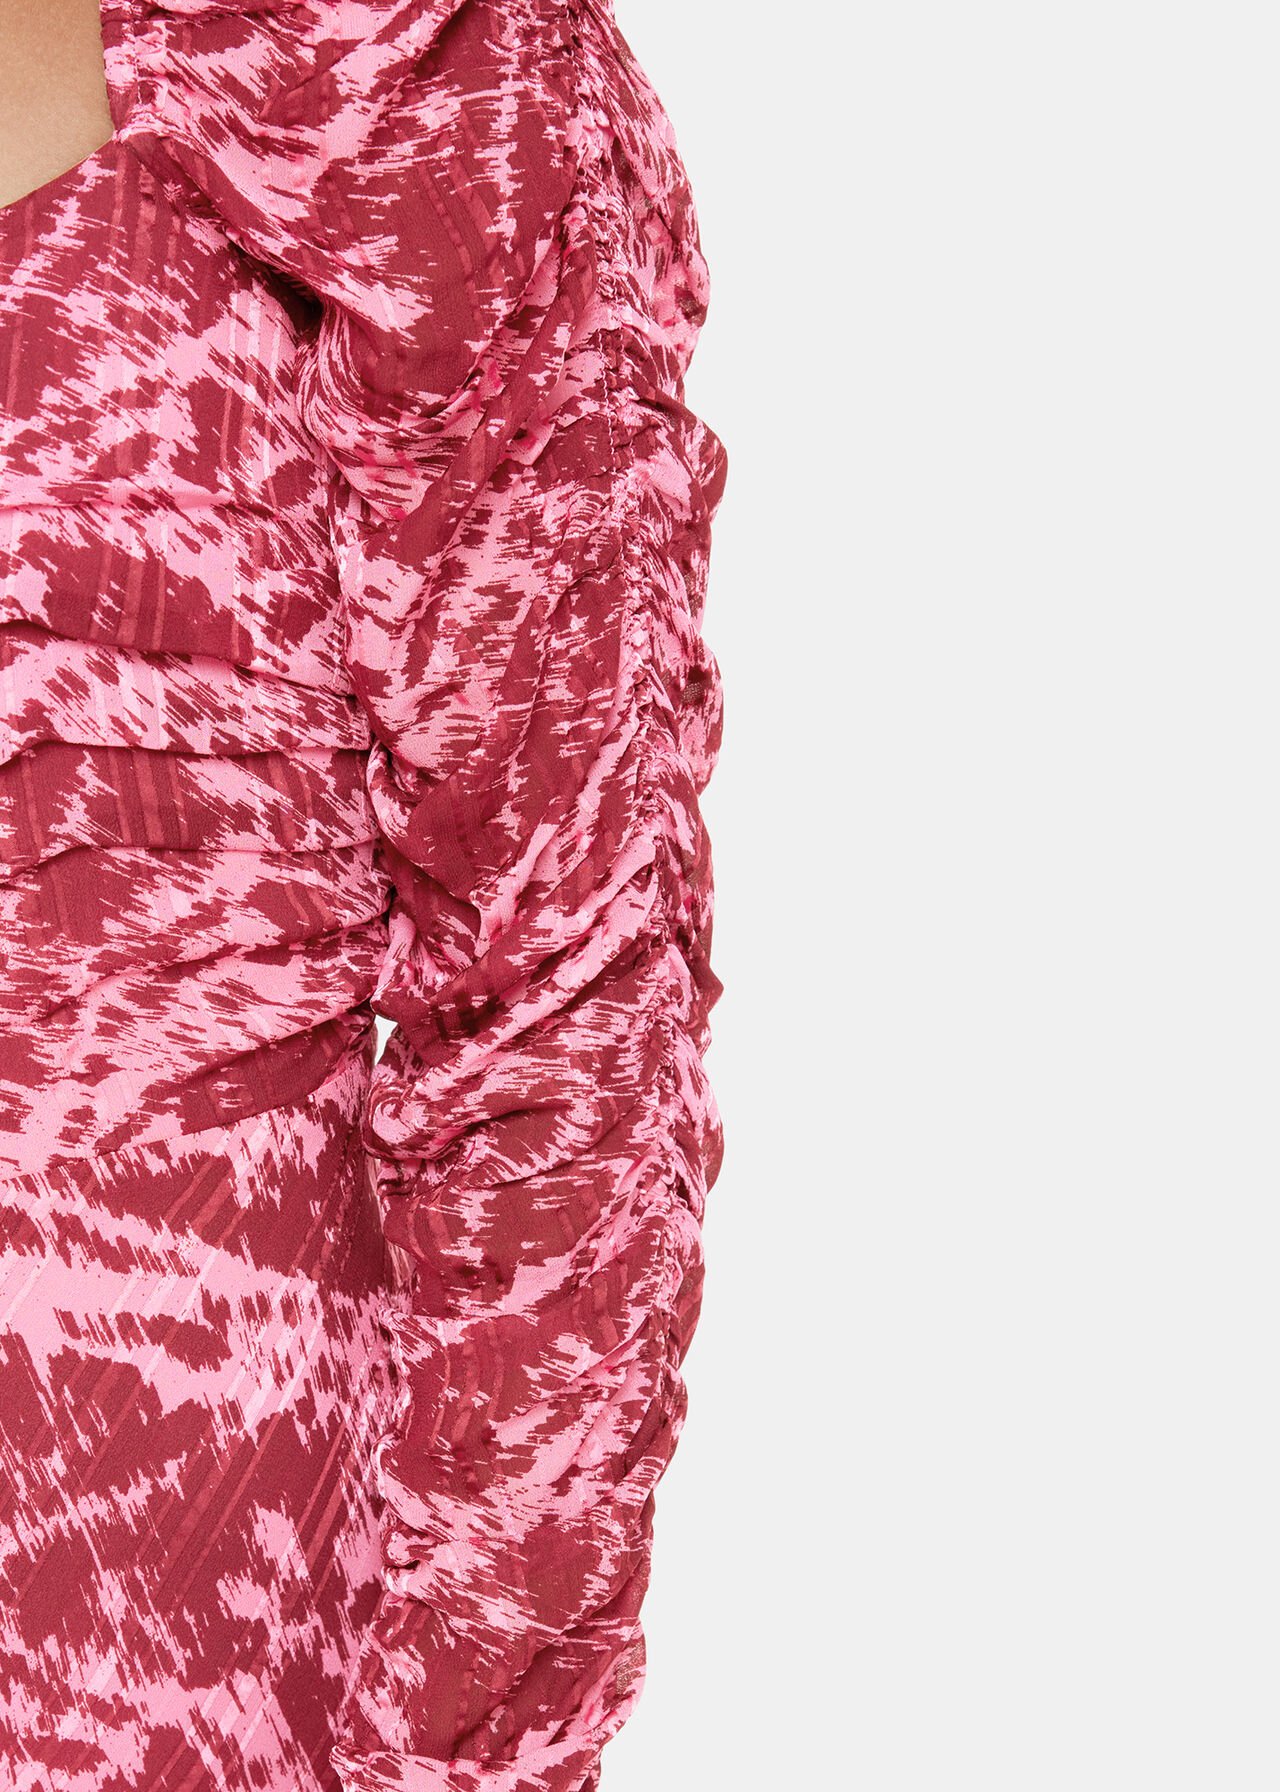 Jonie Sleek Texture Midi Dress